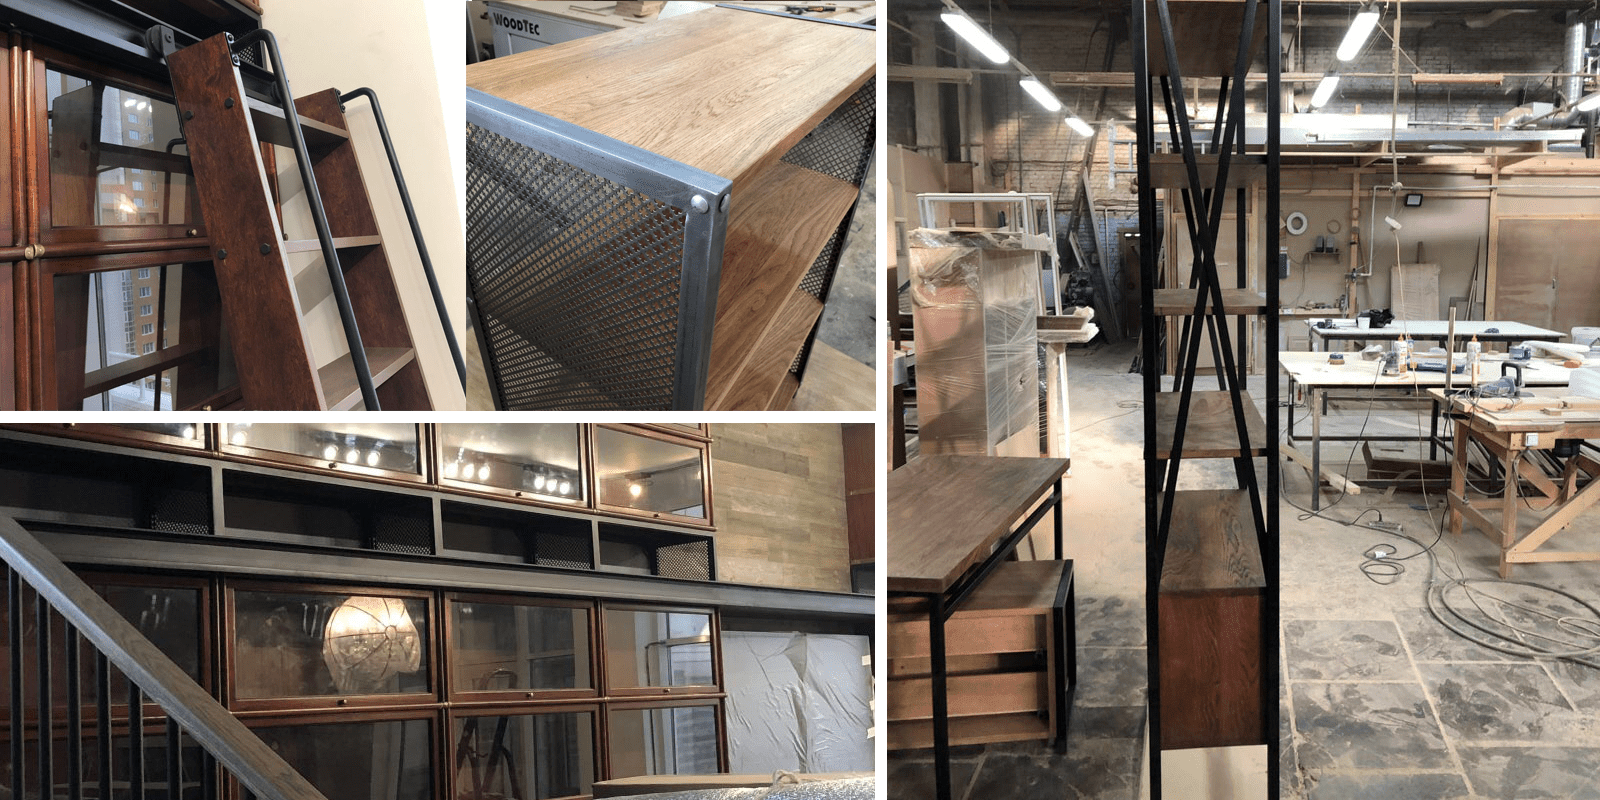 Мастерская Wood Supply - производство мебели в стиле лофт, индастриал в Минске